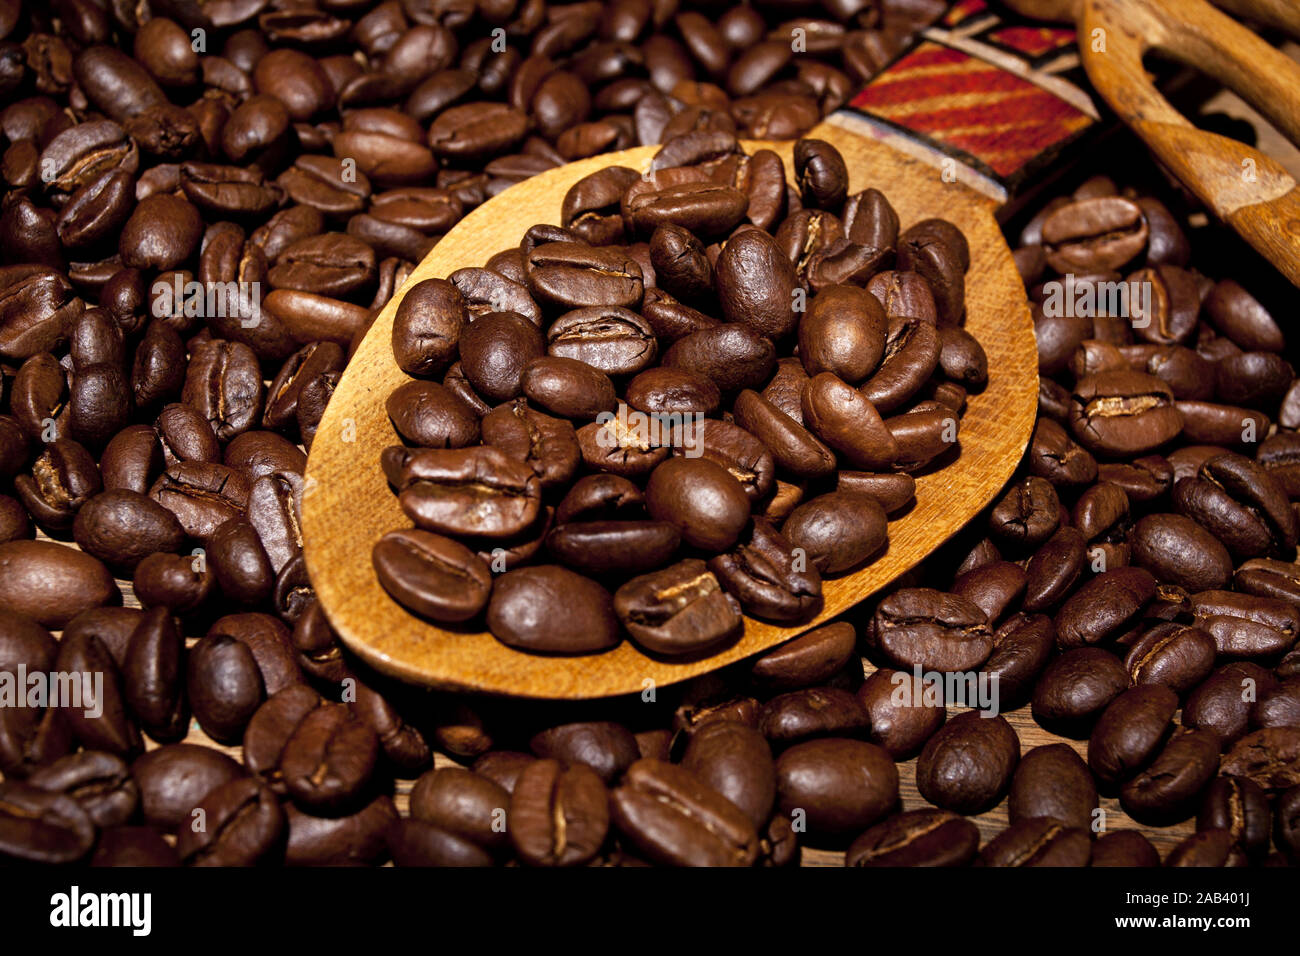 Frisch geroestete Kaffeebohnen auf einem Holzloeffel |Freshly roasted coffee beans on a wooden spoon| Stock Photo